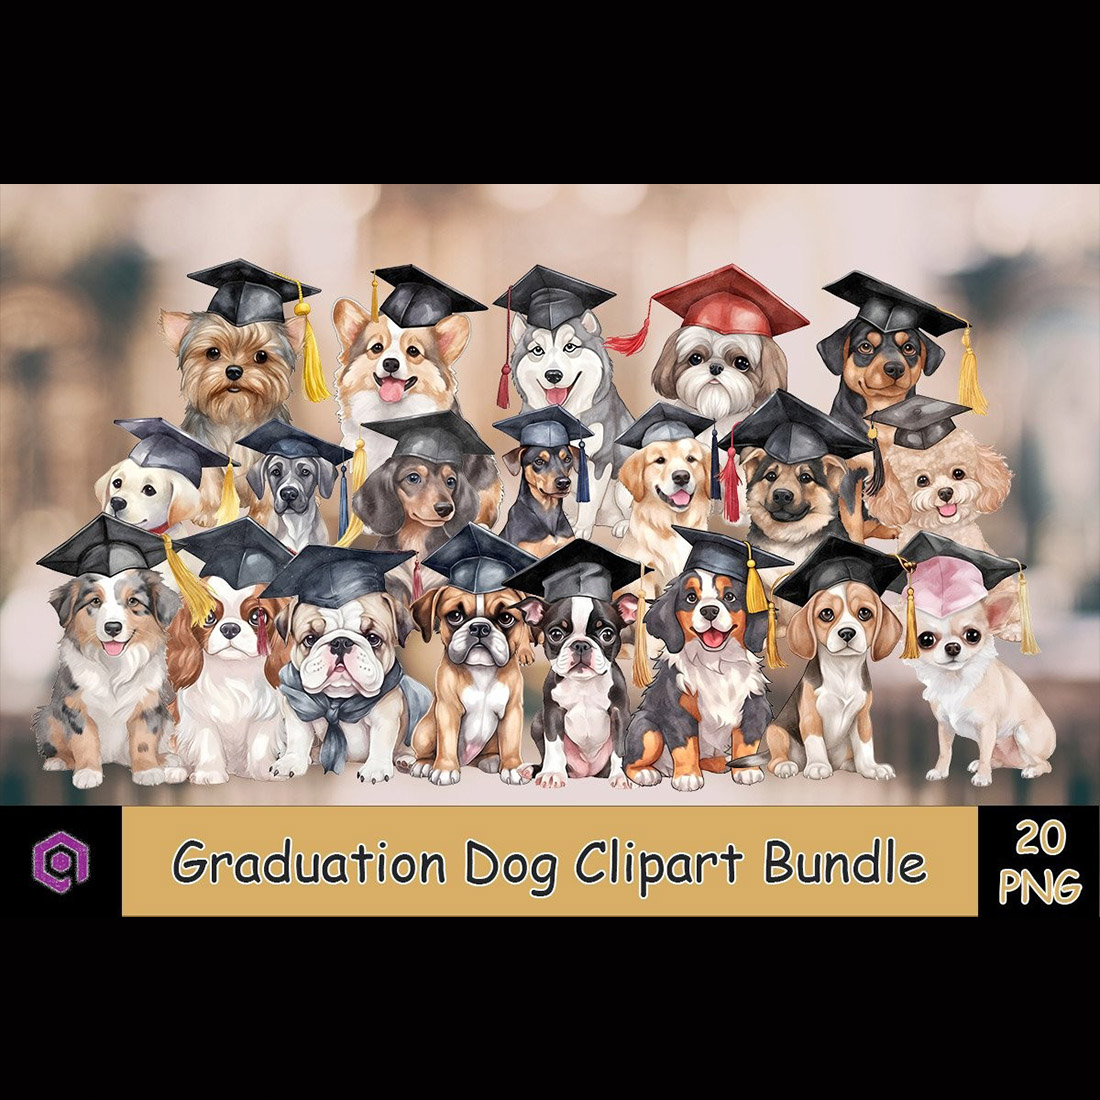 Graduation Dog Clipart PNG Bundle cover image.